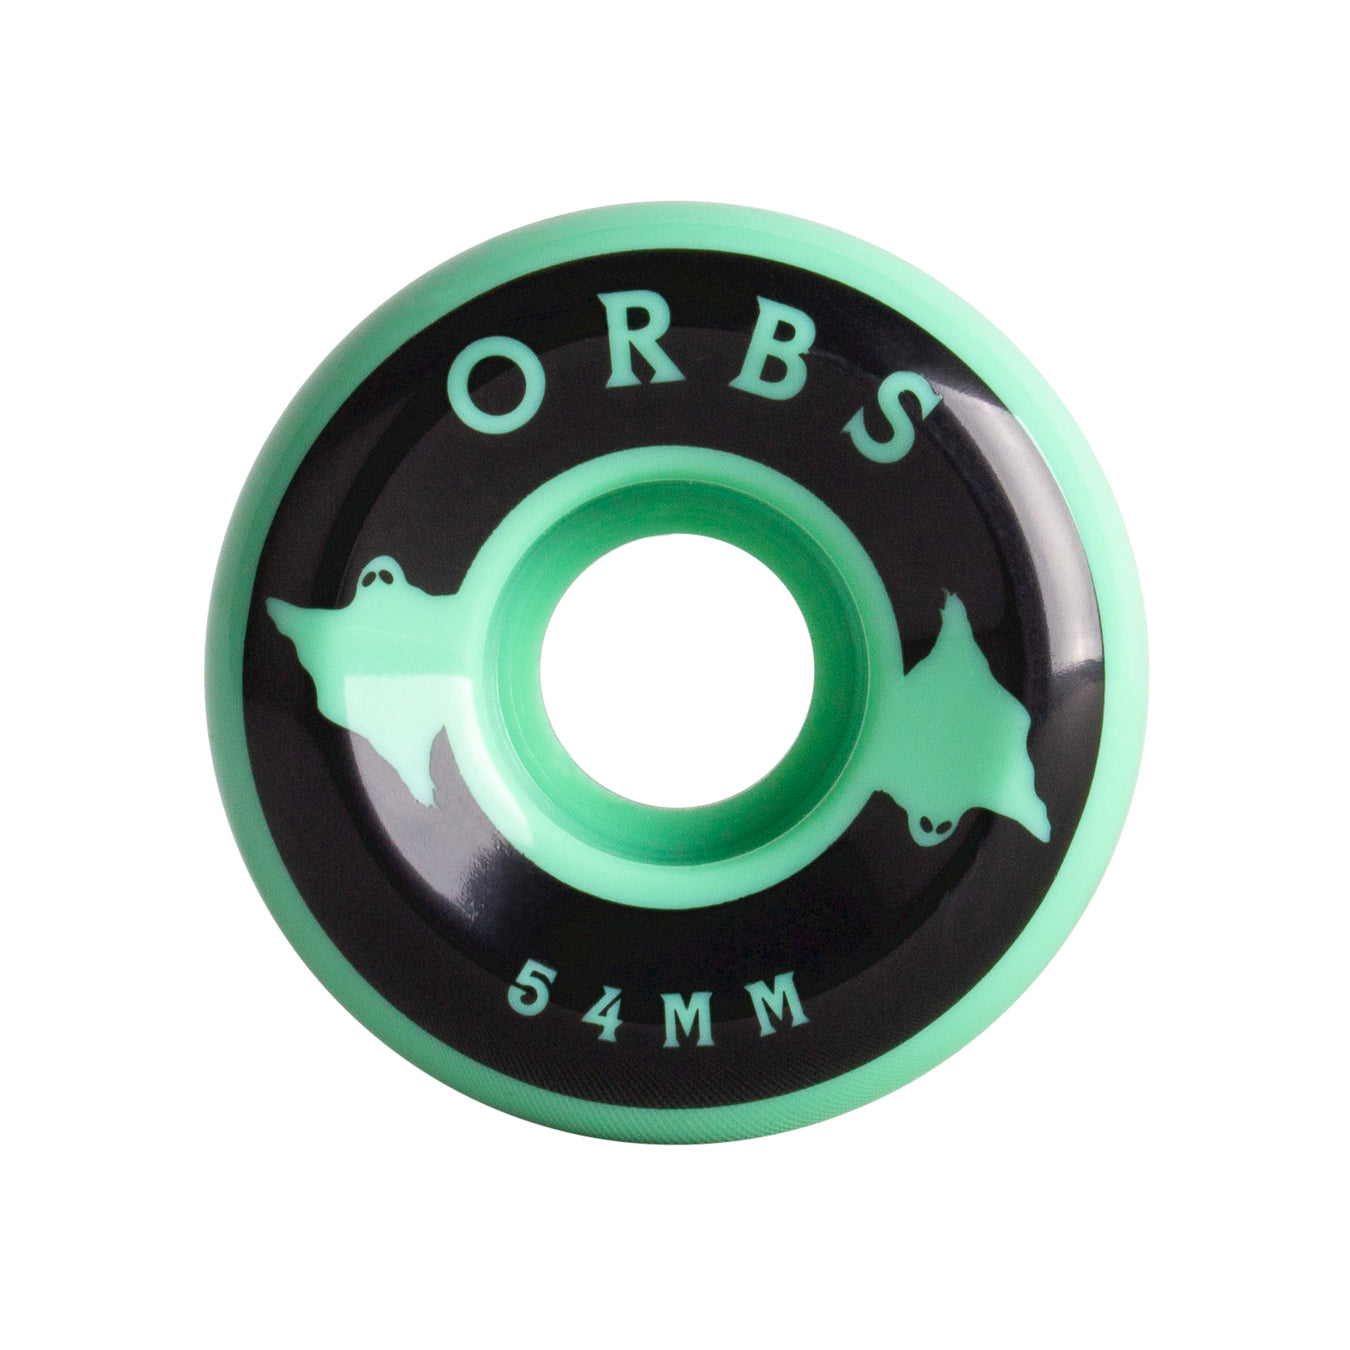 Orbs Specters Skateboard Wheels Mint 54mm